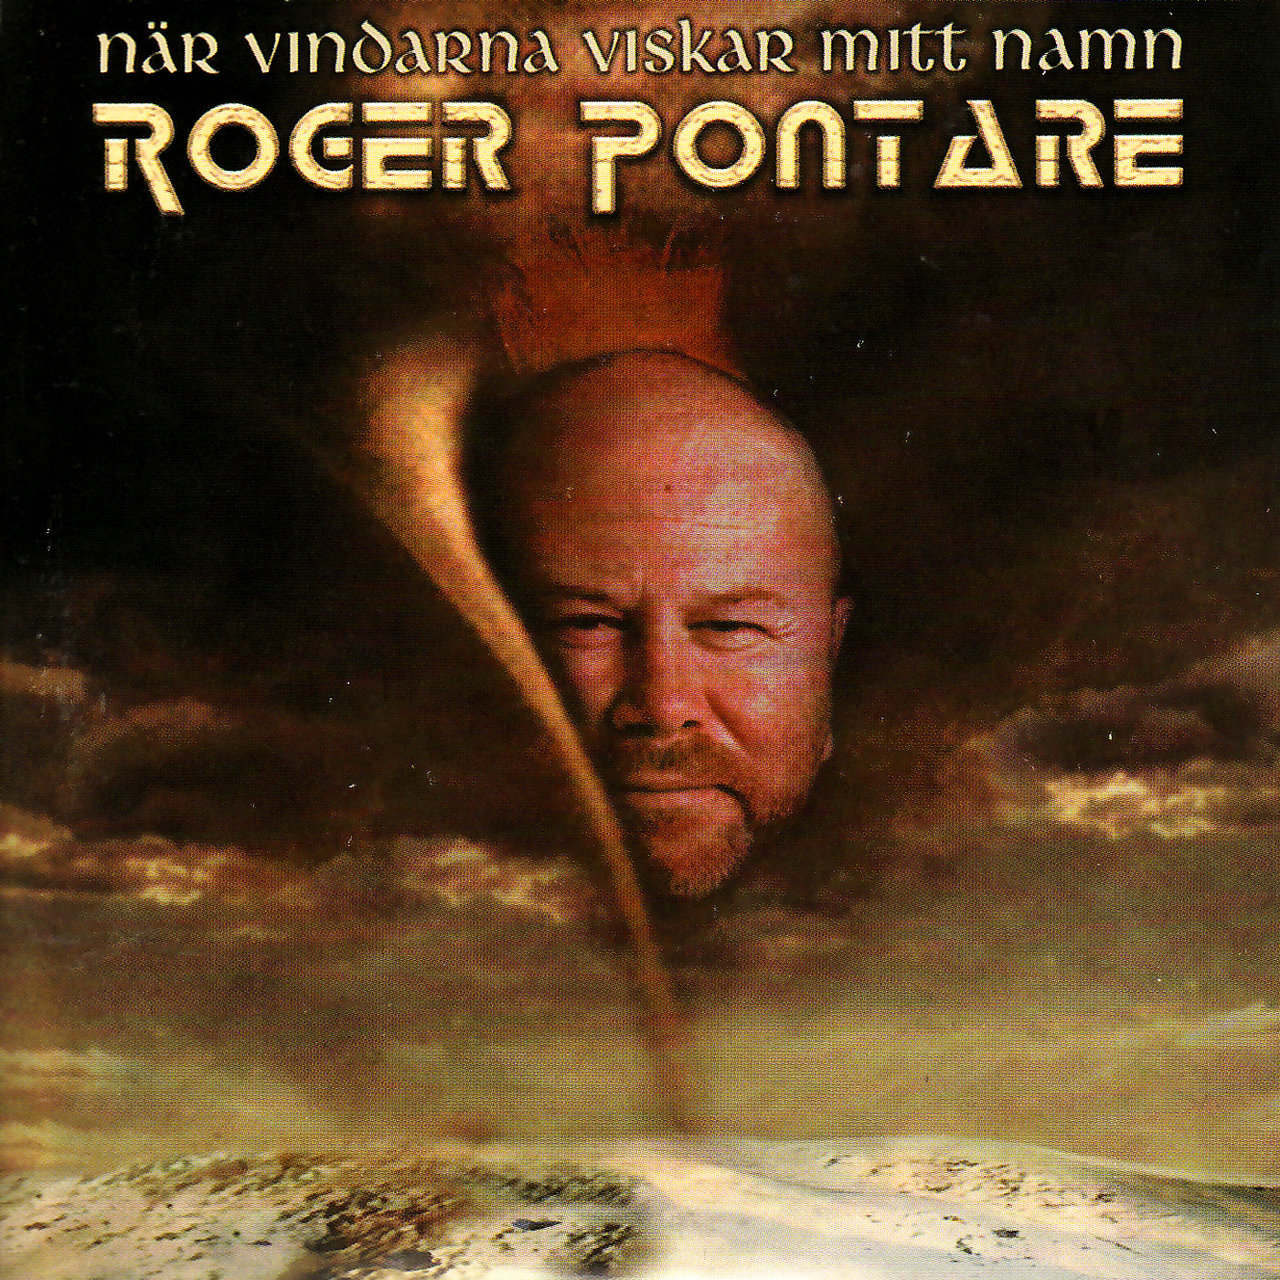 Roger Pontare — När vindarna viskar mitt namn cover artwork